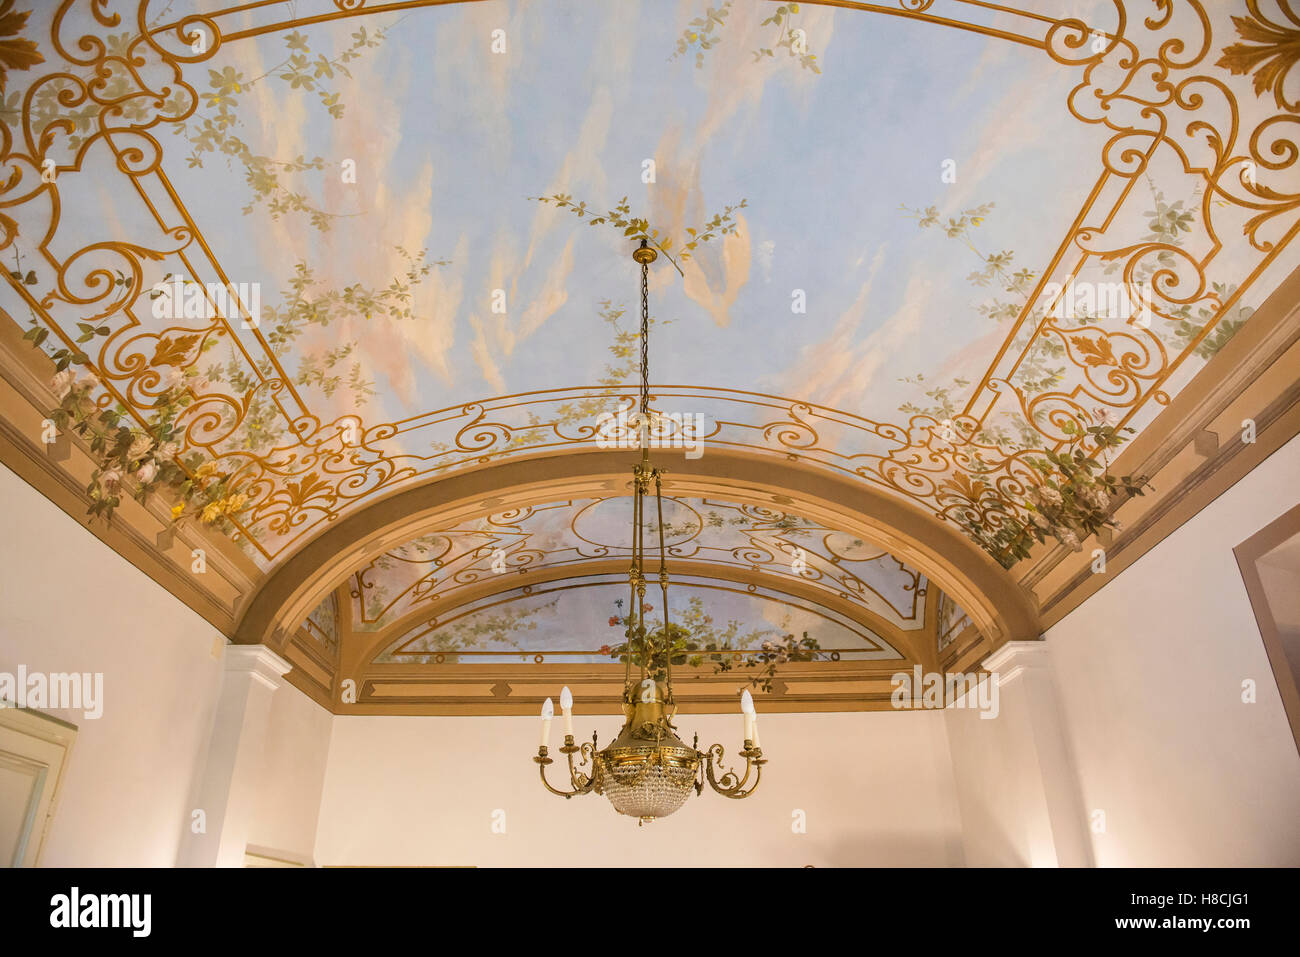 Interno di una villa toscana con trompe l'oeil soffitti dipinti e pareti in Italia Foto Stock